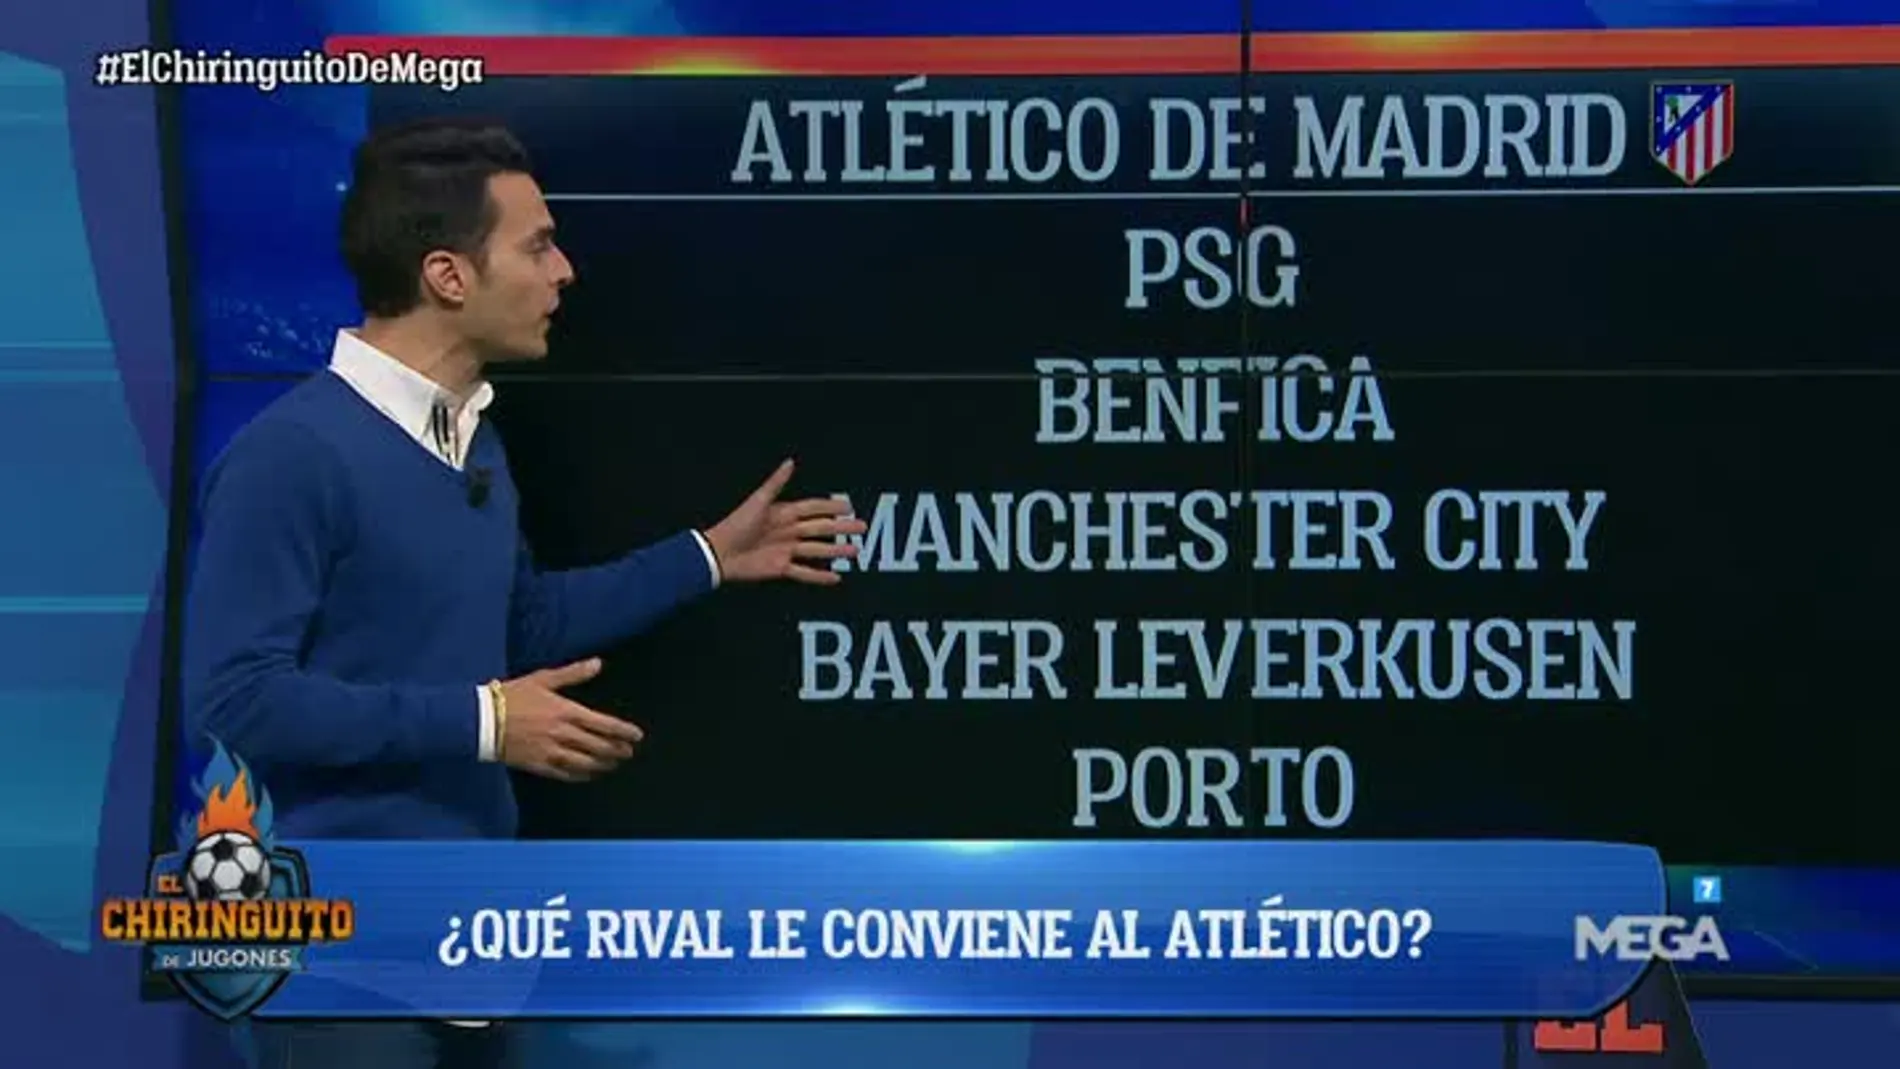 Diego analiza los rivales de los españoles